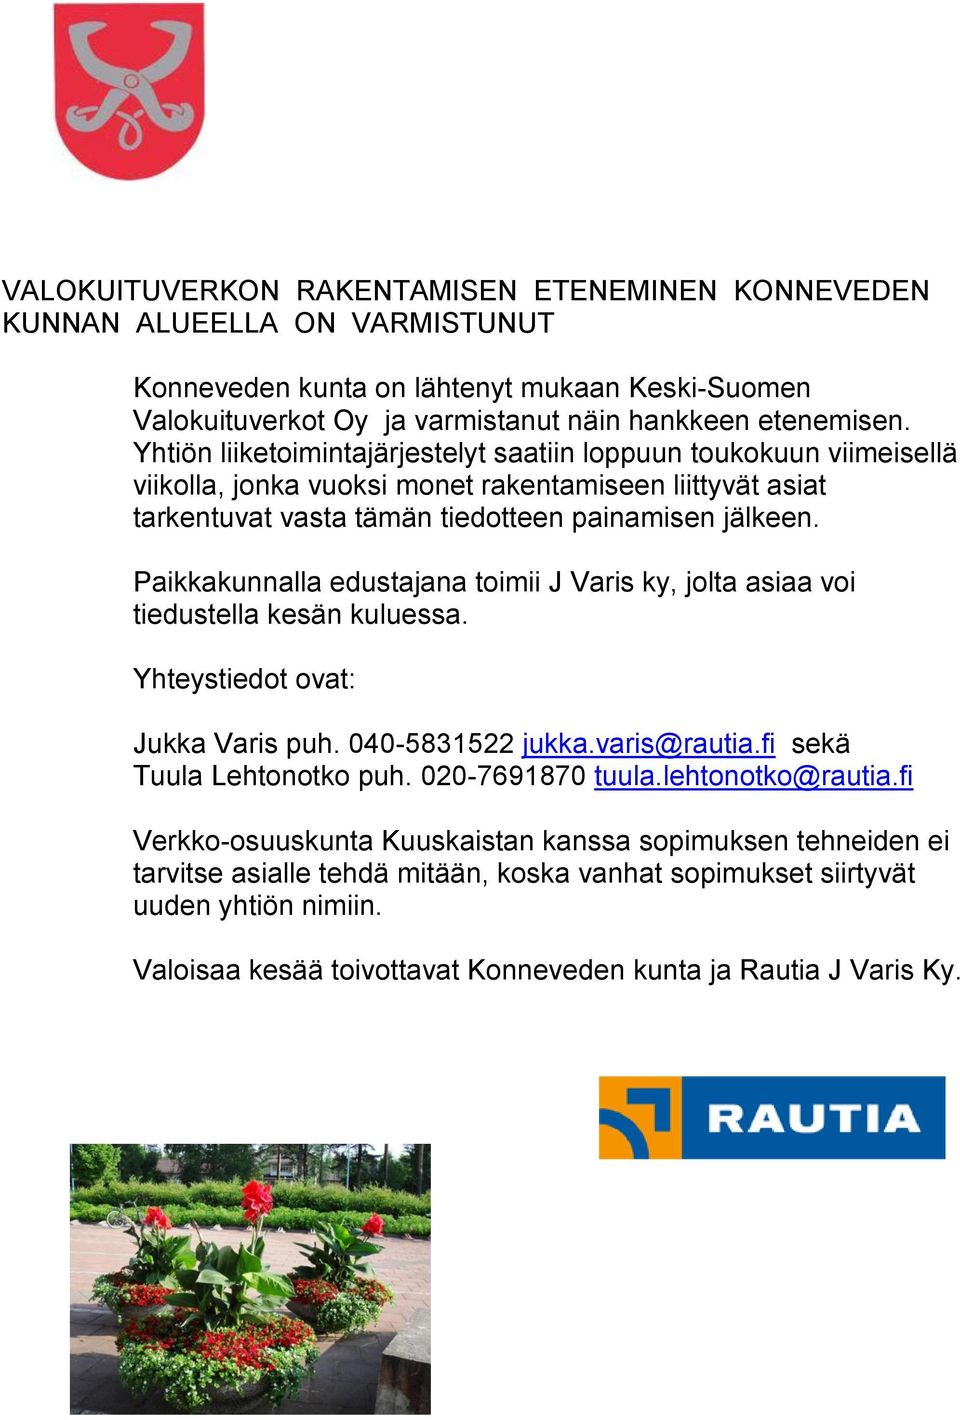 Paikkakunnalla edustajana toimii J Varis ky, jolta asiaa voi tiedustella kesän kuluessa. Yhteystiedot ovat: Jukka Varis puh. 040-5831522 jukka.varis@rautia.fi sekä Tuula Lehtonotko puh.